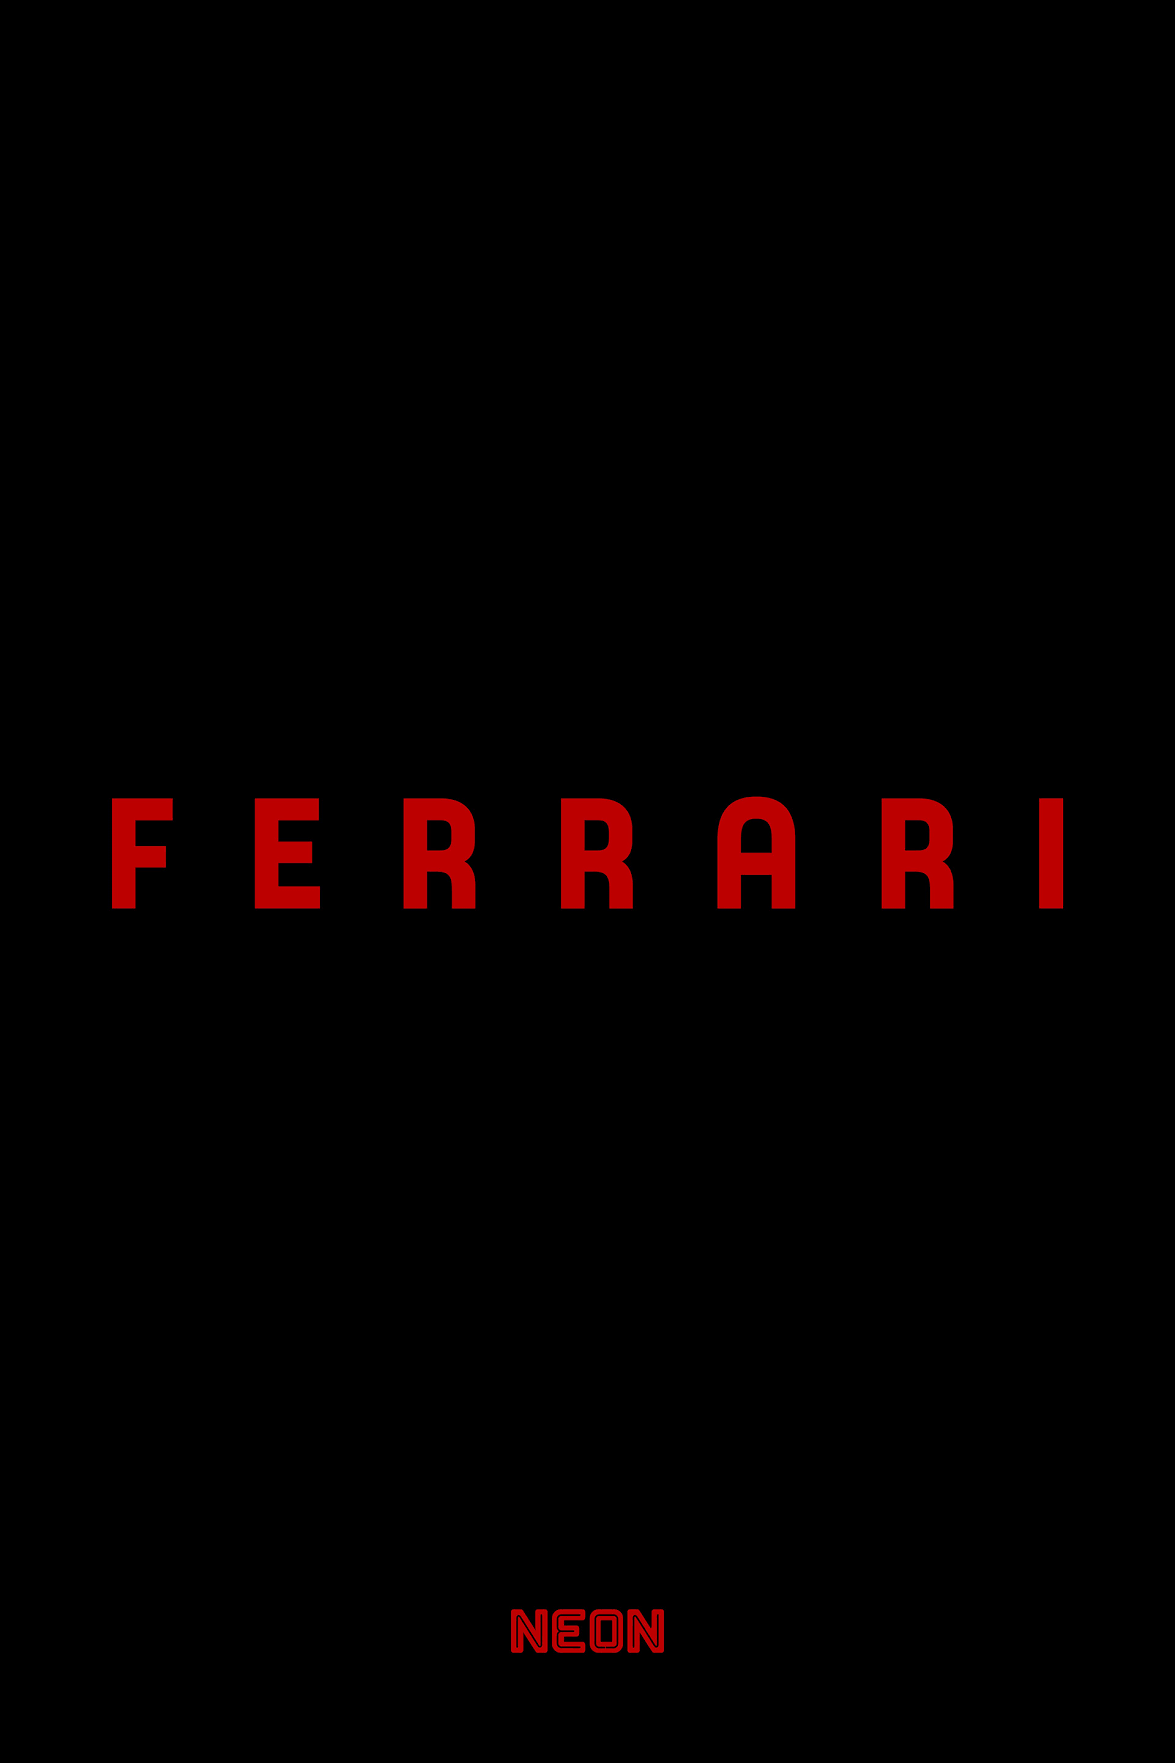 Ferrari by Michael Mann